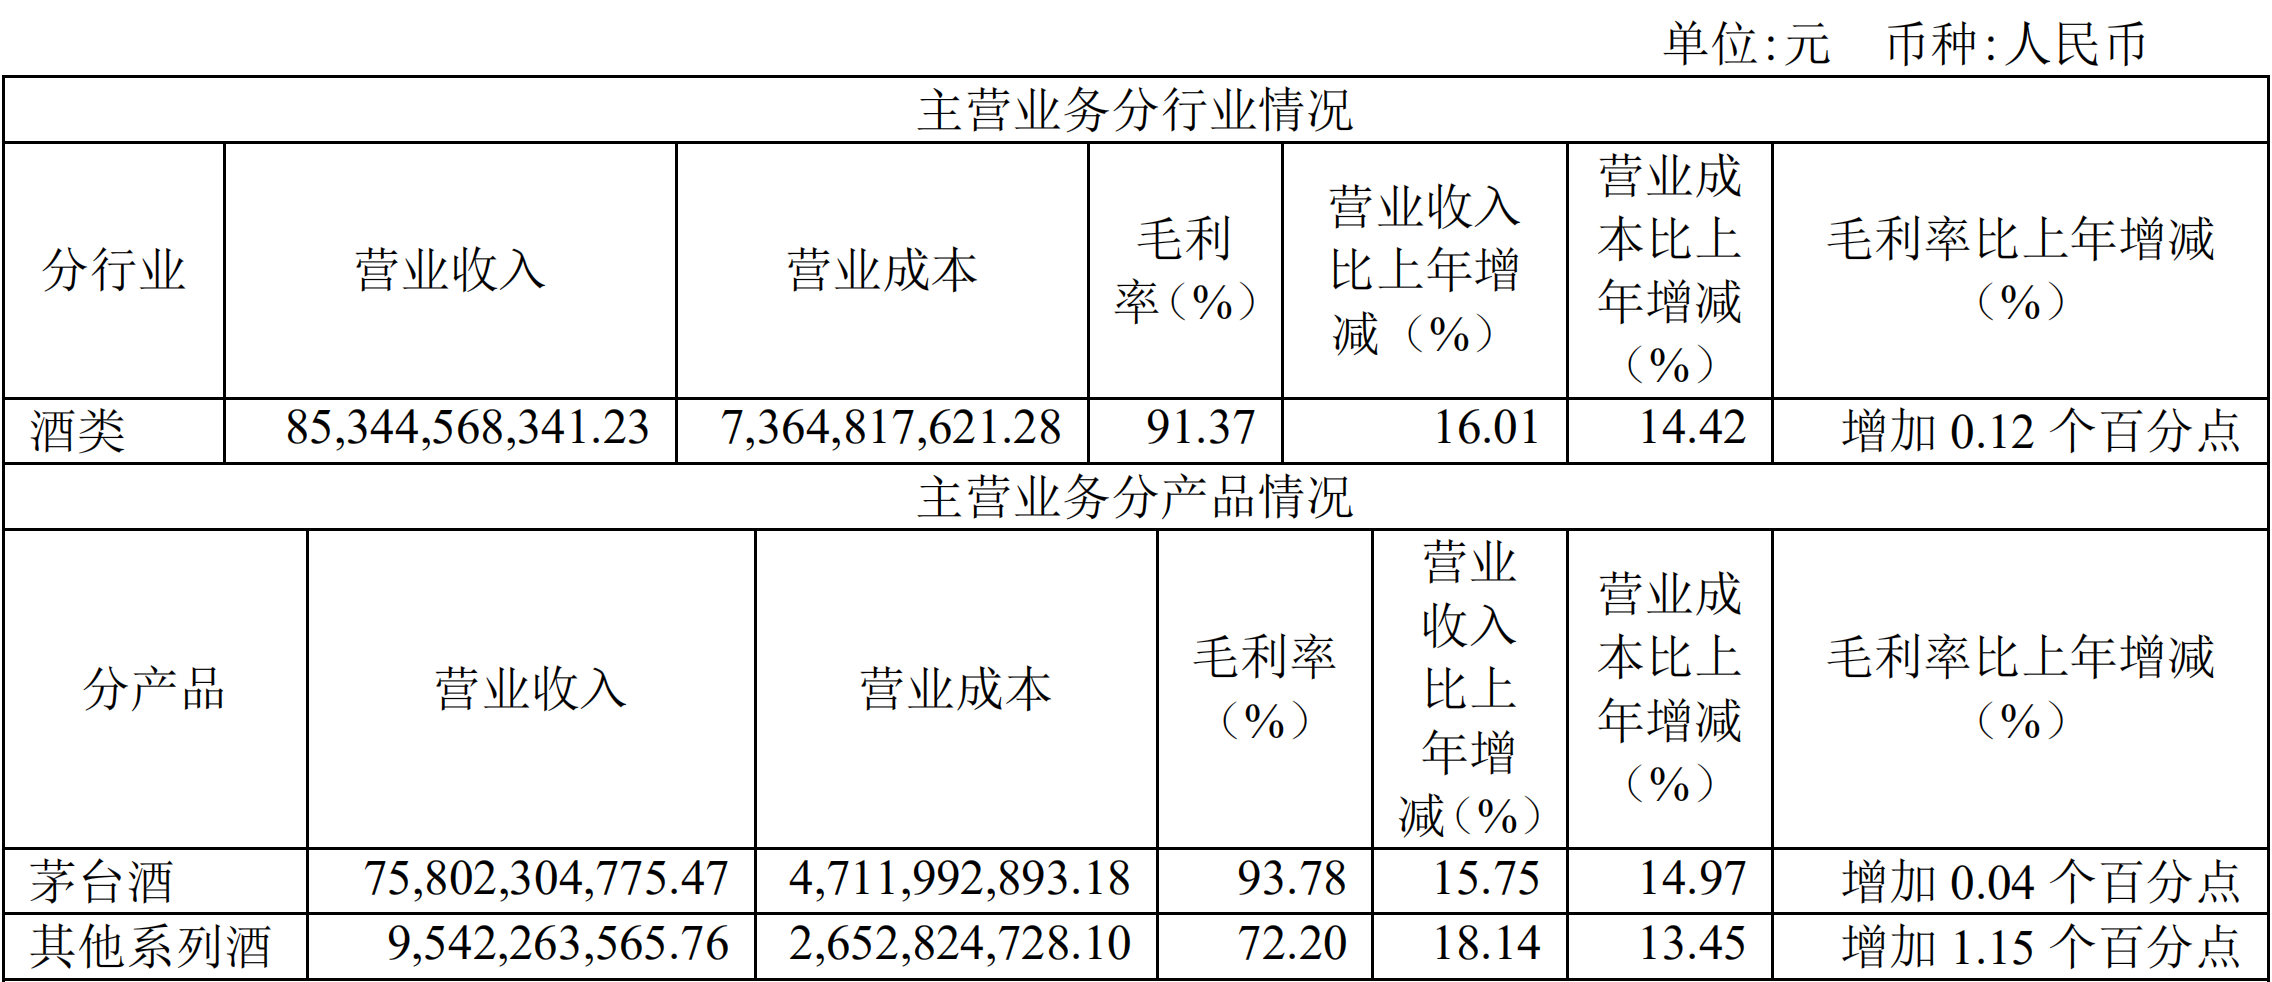 贵州茅台现金分红首超200亿 预计今年茅台酒投放量与去年持平